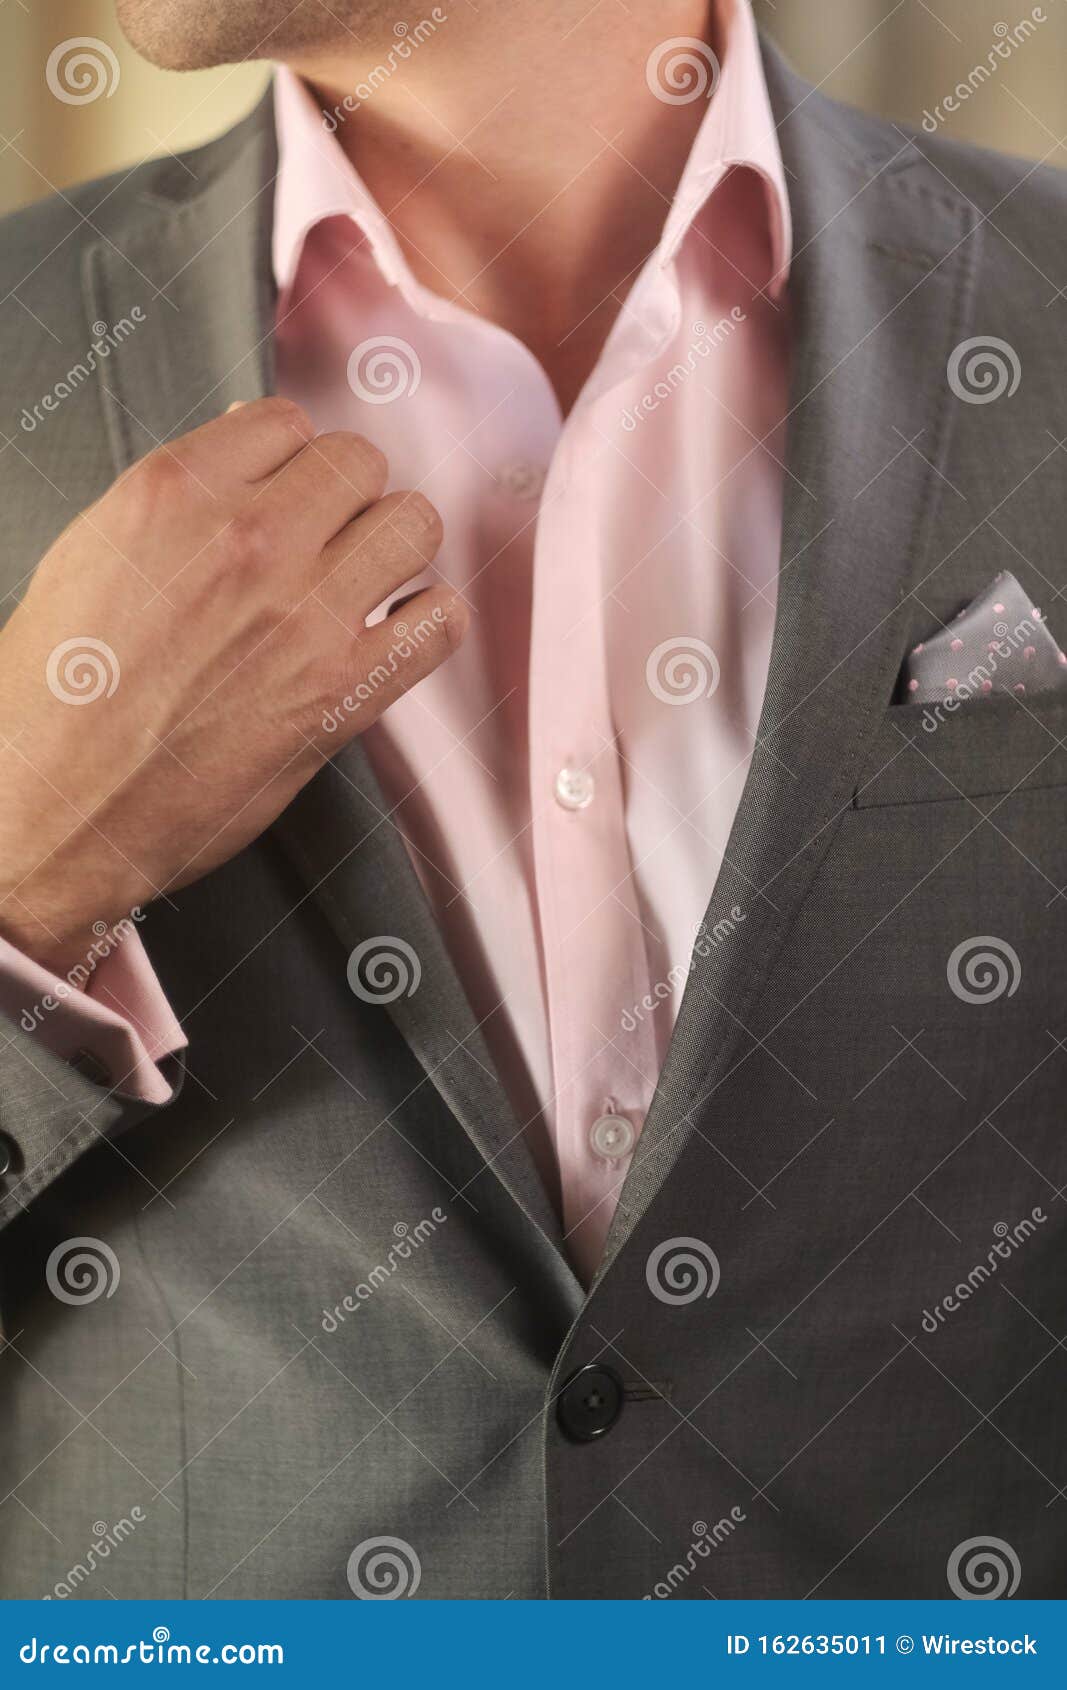 Imagen Vertical Un Novio Con Una Camisa Rosa Y Un Traje Gris, Preparándose Para La Boda de - de boutonniere, chaqueta: 162635011